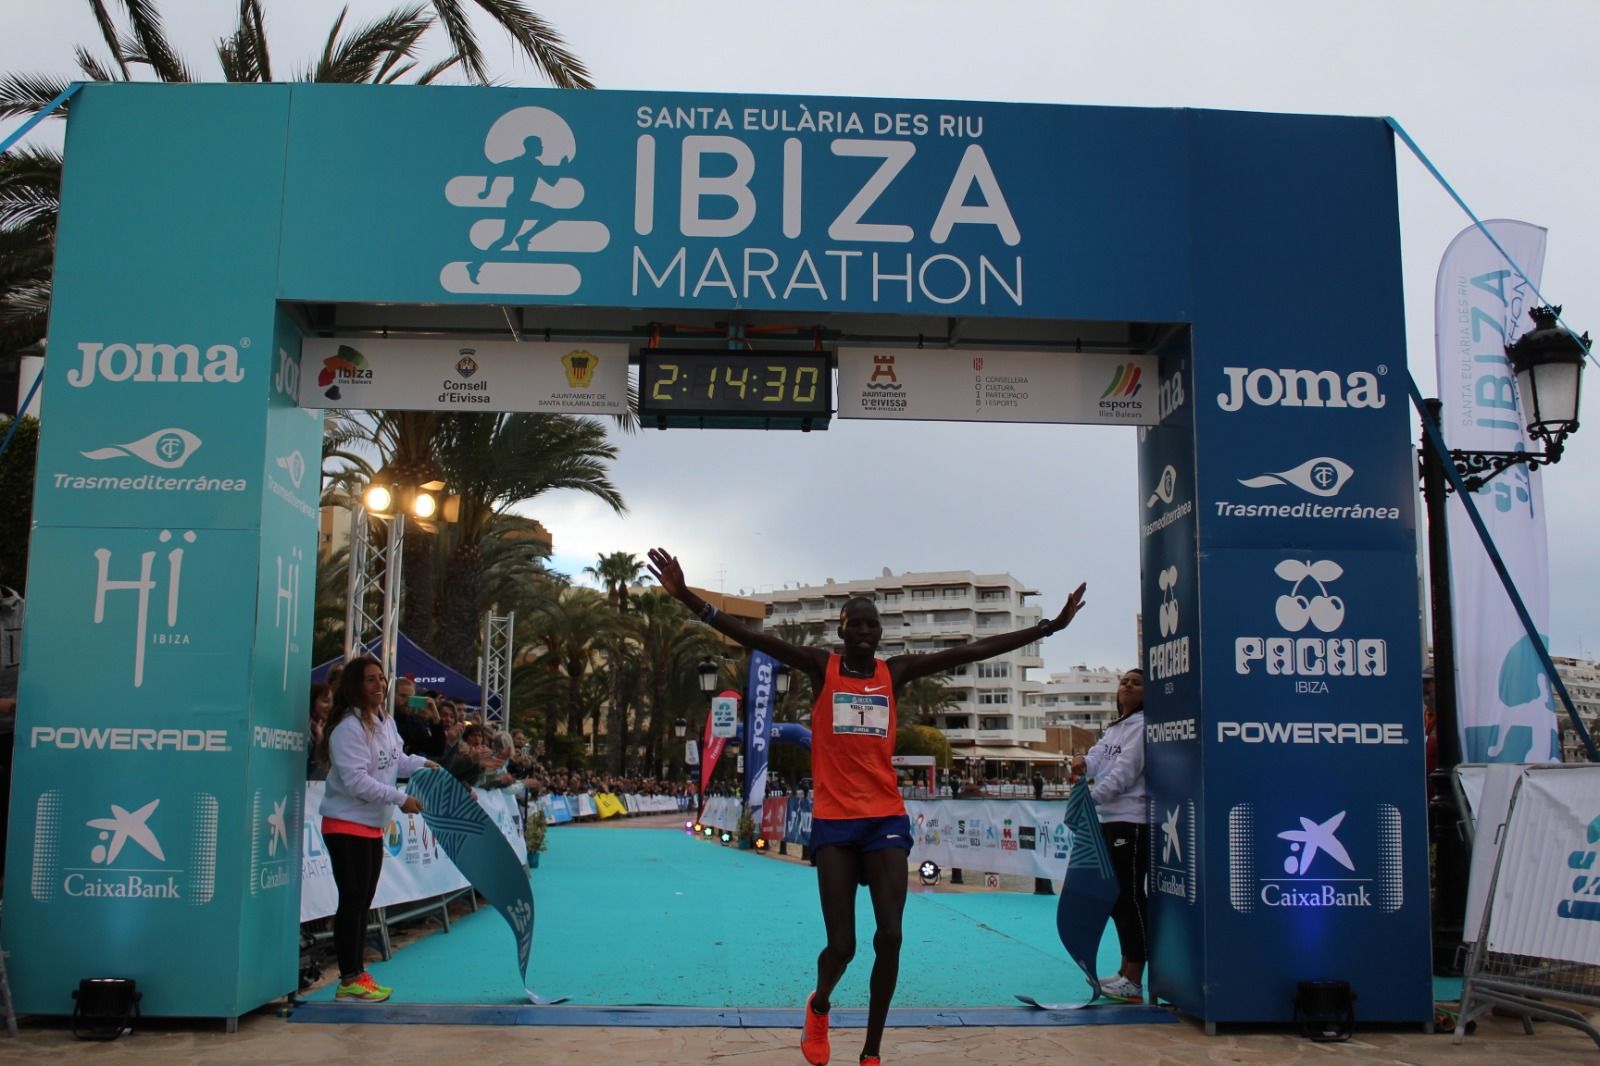 Cortes al tráfico rodado en el municipio con motivo del Santa Eulària Ibiza Marathon el próximo 2 de octubre